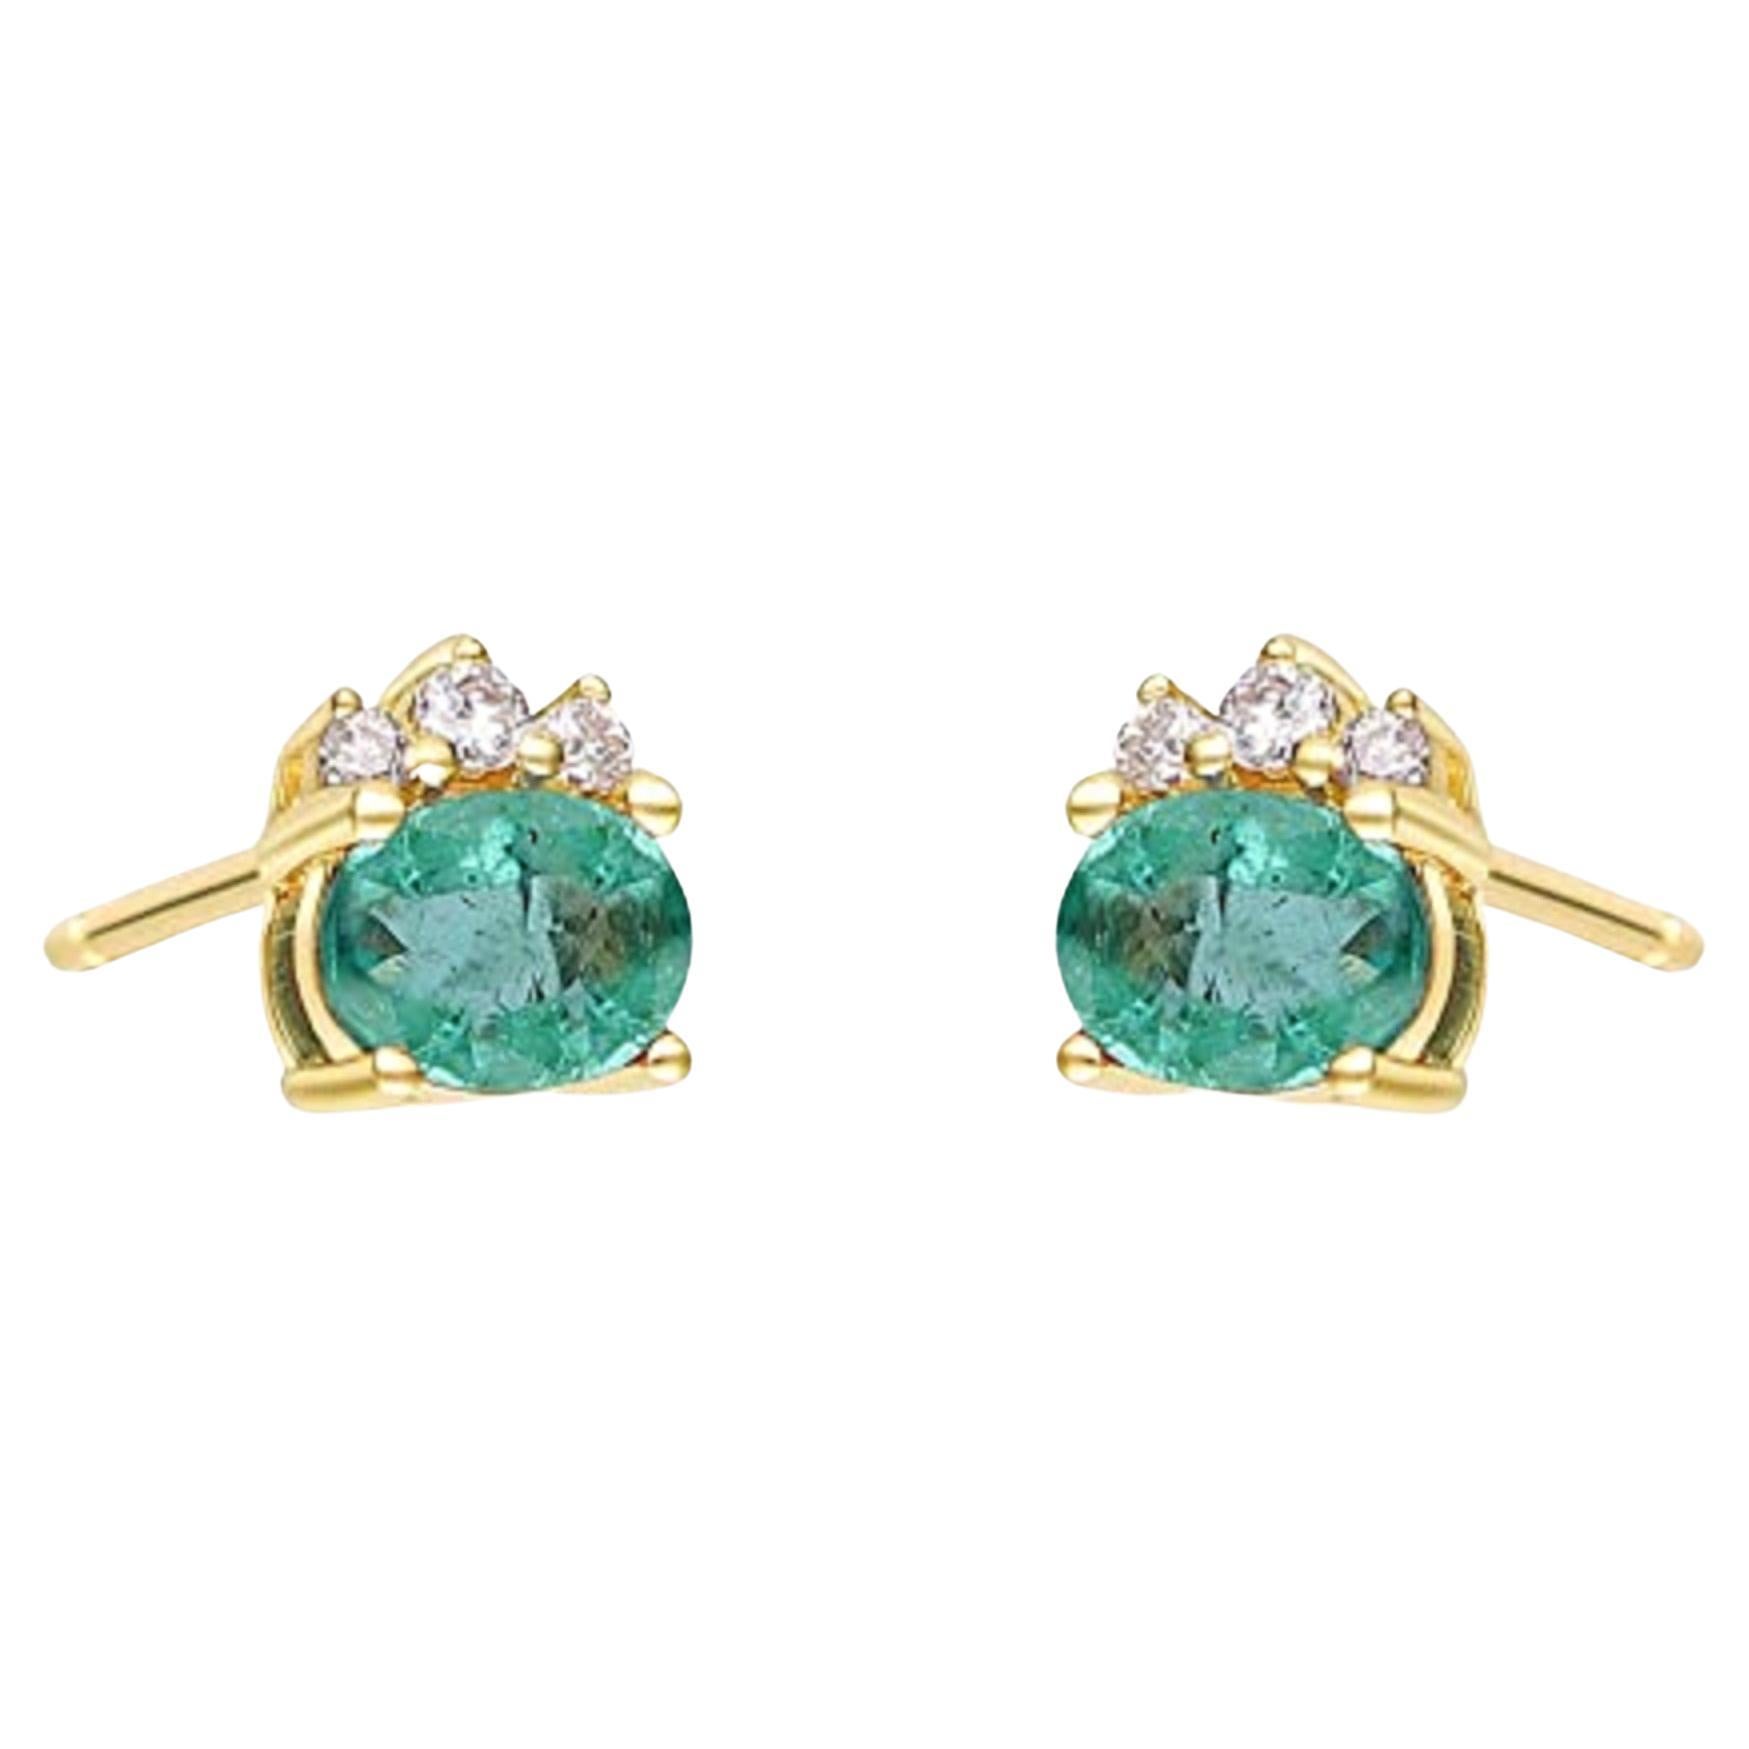 Gin & Grace 10K Yellow Gold Zambian Emerald Earrings with Diamond For Women